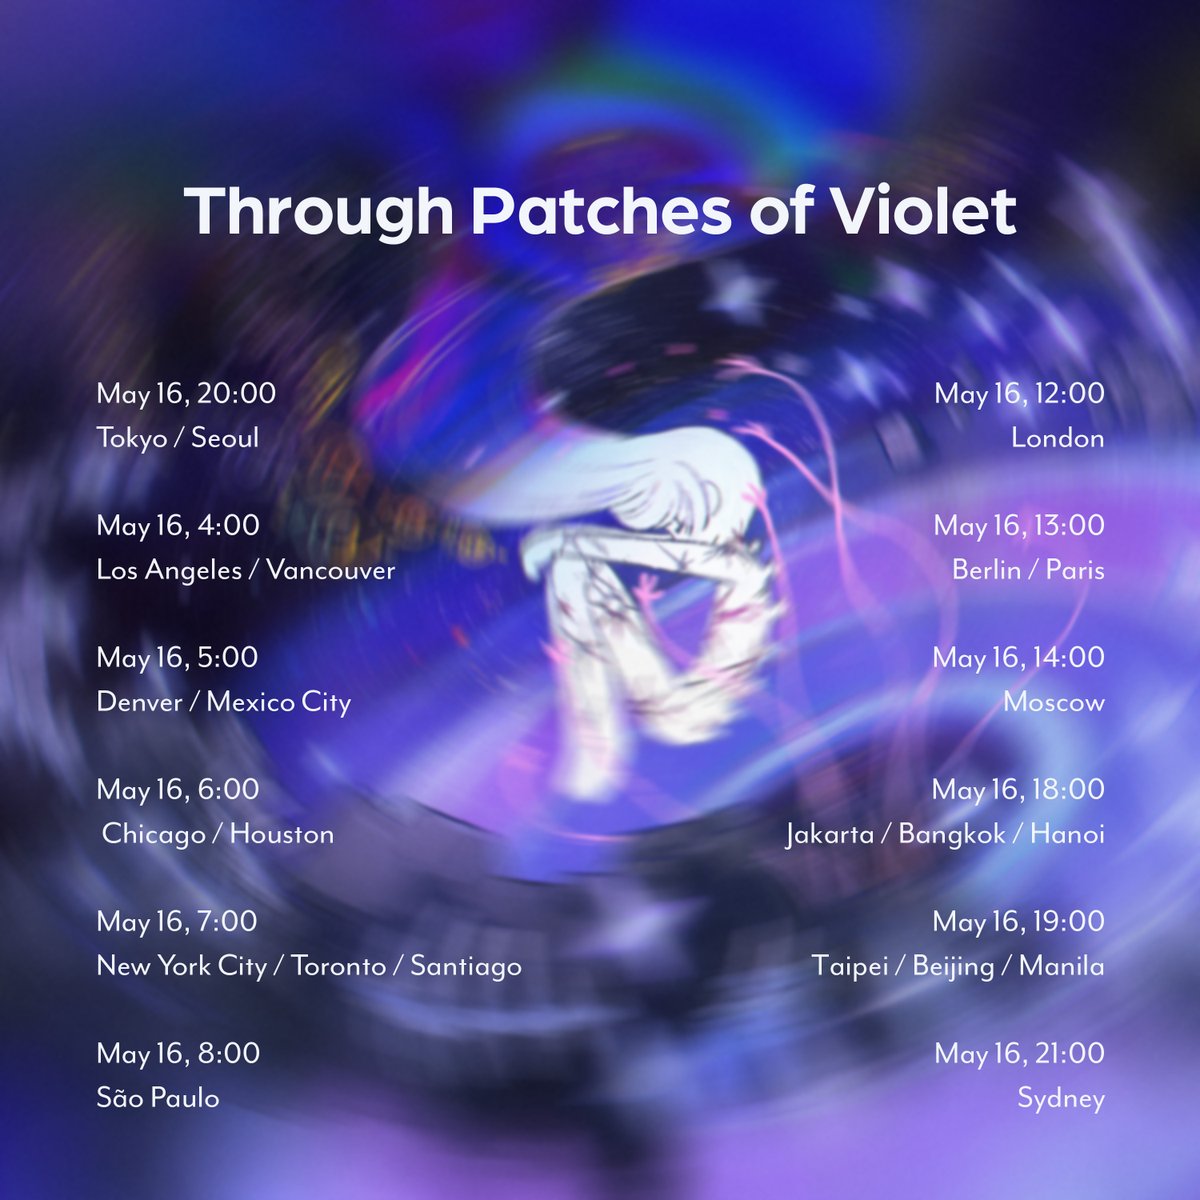 💜 NEW SONG 💜 ' Through Patches of Violet ' COMING SOON 💜💜💜💜💜💜💜💜💜💜 d̶̈́̎ͅe̵̫͖̪̓l̷͉̓͝ẹ̴̡͓̈́̽͝t̴͕̪͕͂͋e̶̩͌ ̴͍̺͓̔d̸͇̺͇̋̽̆e̷͆̿͜ͅl̶͈̩̺̔̇͘ë̸̘́ț̴͛̍̊ẹ̷͔̌ ̸͙̘̪̈́́ḋ̵̤̦͎̎͝e̵̡͚̯͗́l̷̢̼̂͠e̷͆́̕͜ţ̴͍̂ë̸̛͇́̕ ̵̡̪̜̽̎͋d̷̫̪̊͑̋e̴̪̻͐̌l̸̼͙̉ê̶̫͔̑ṭ̴͂͑ẹ̸̩̆͝